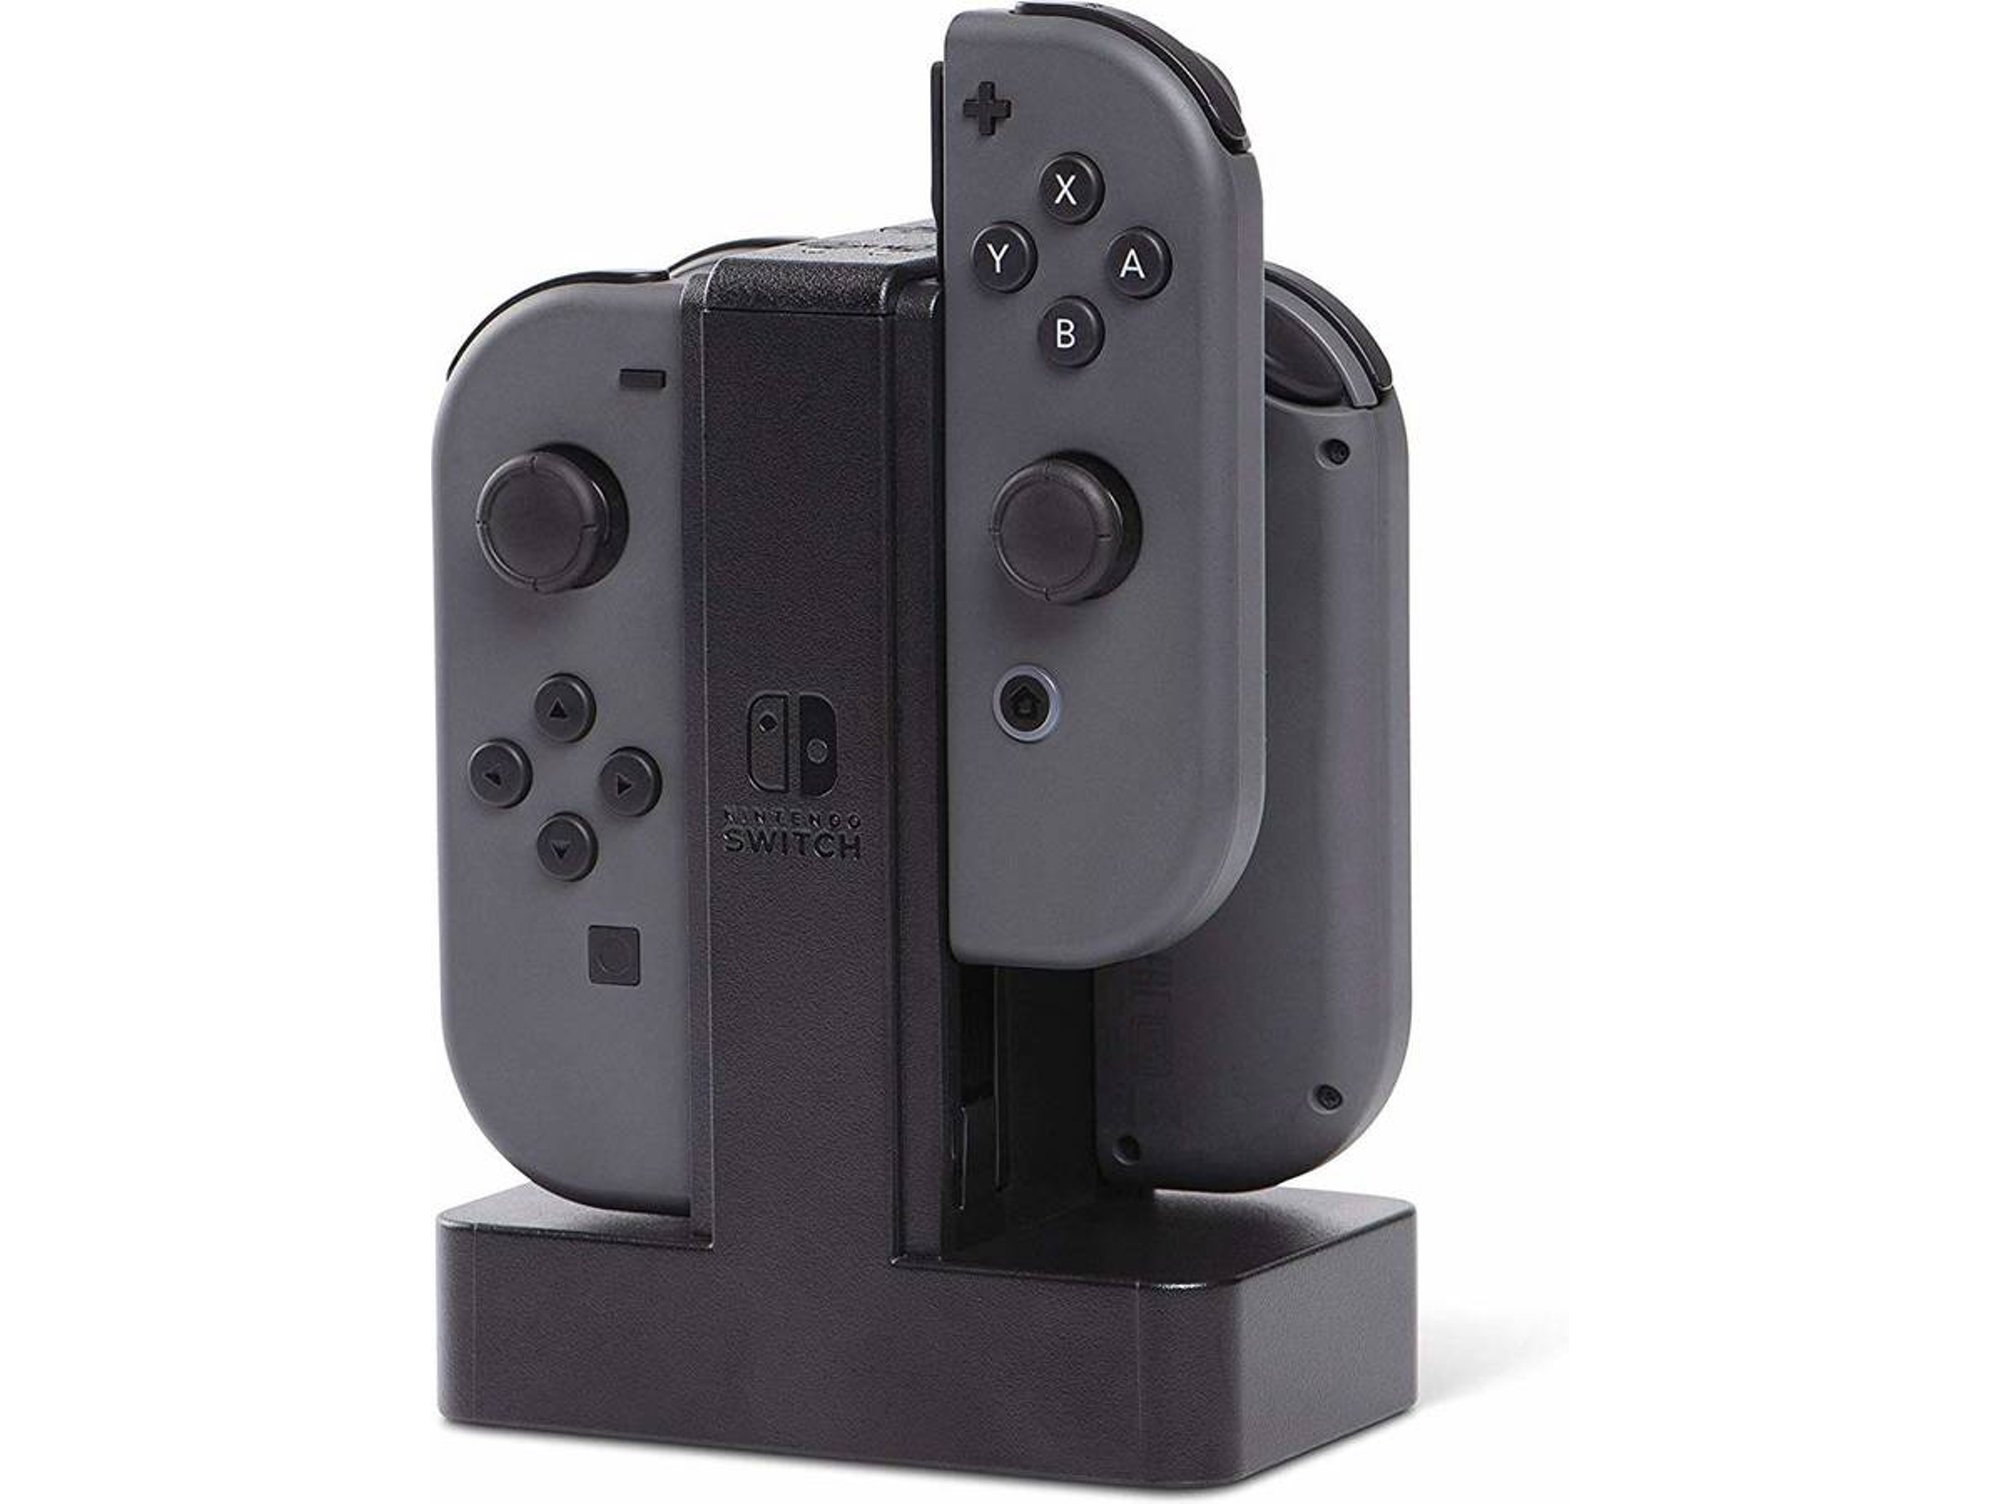 Cargador Mandos Joy-Con Nintendo Switch POWER A Dock Negro